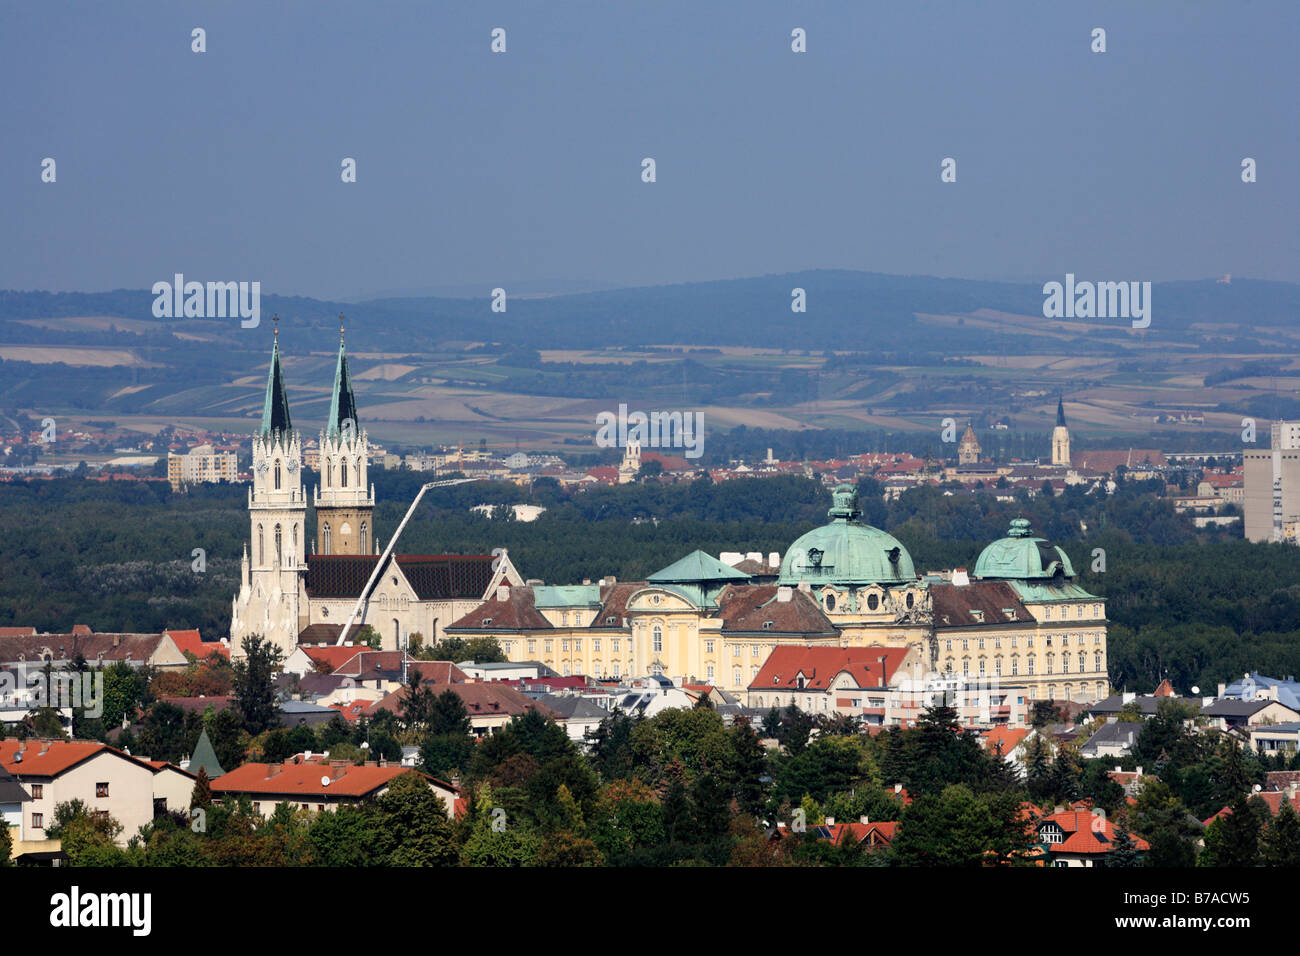 Klosterneuburg Monastery, Lower Austria, Austria, Europe Stock Photo